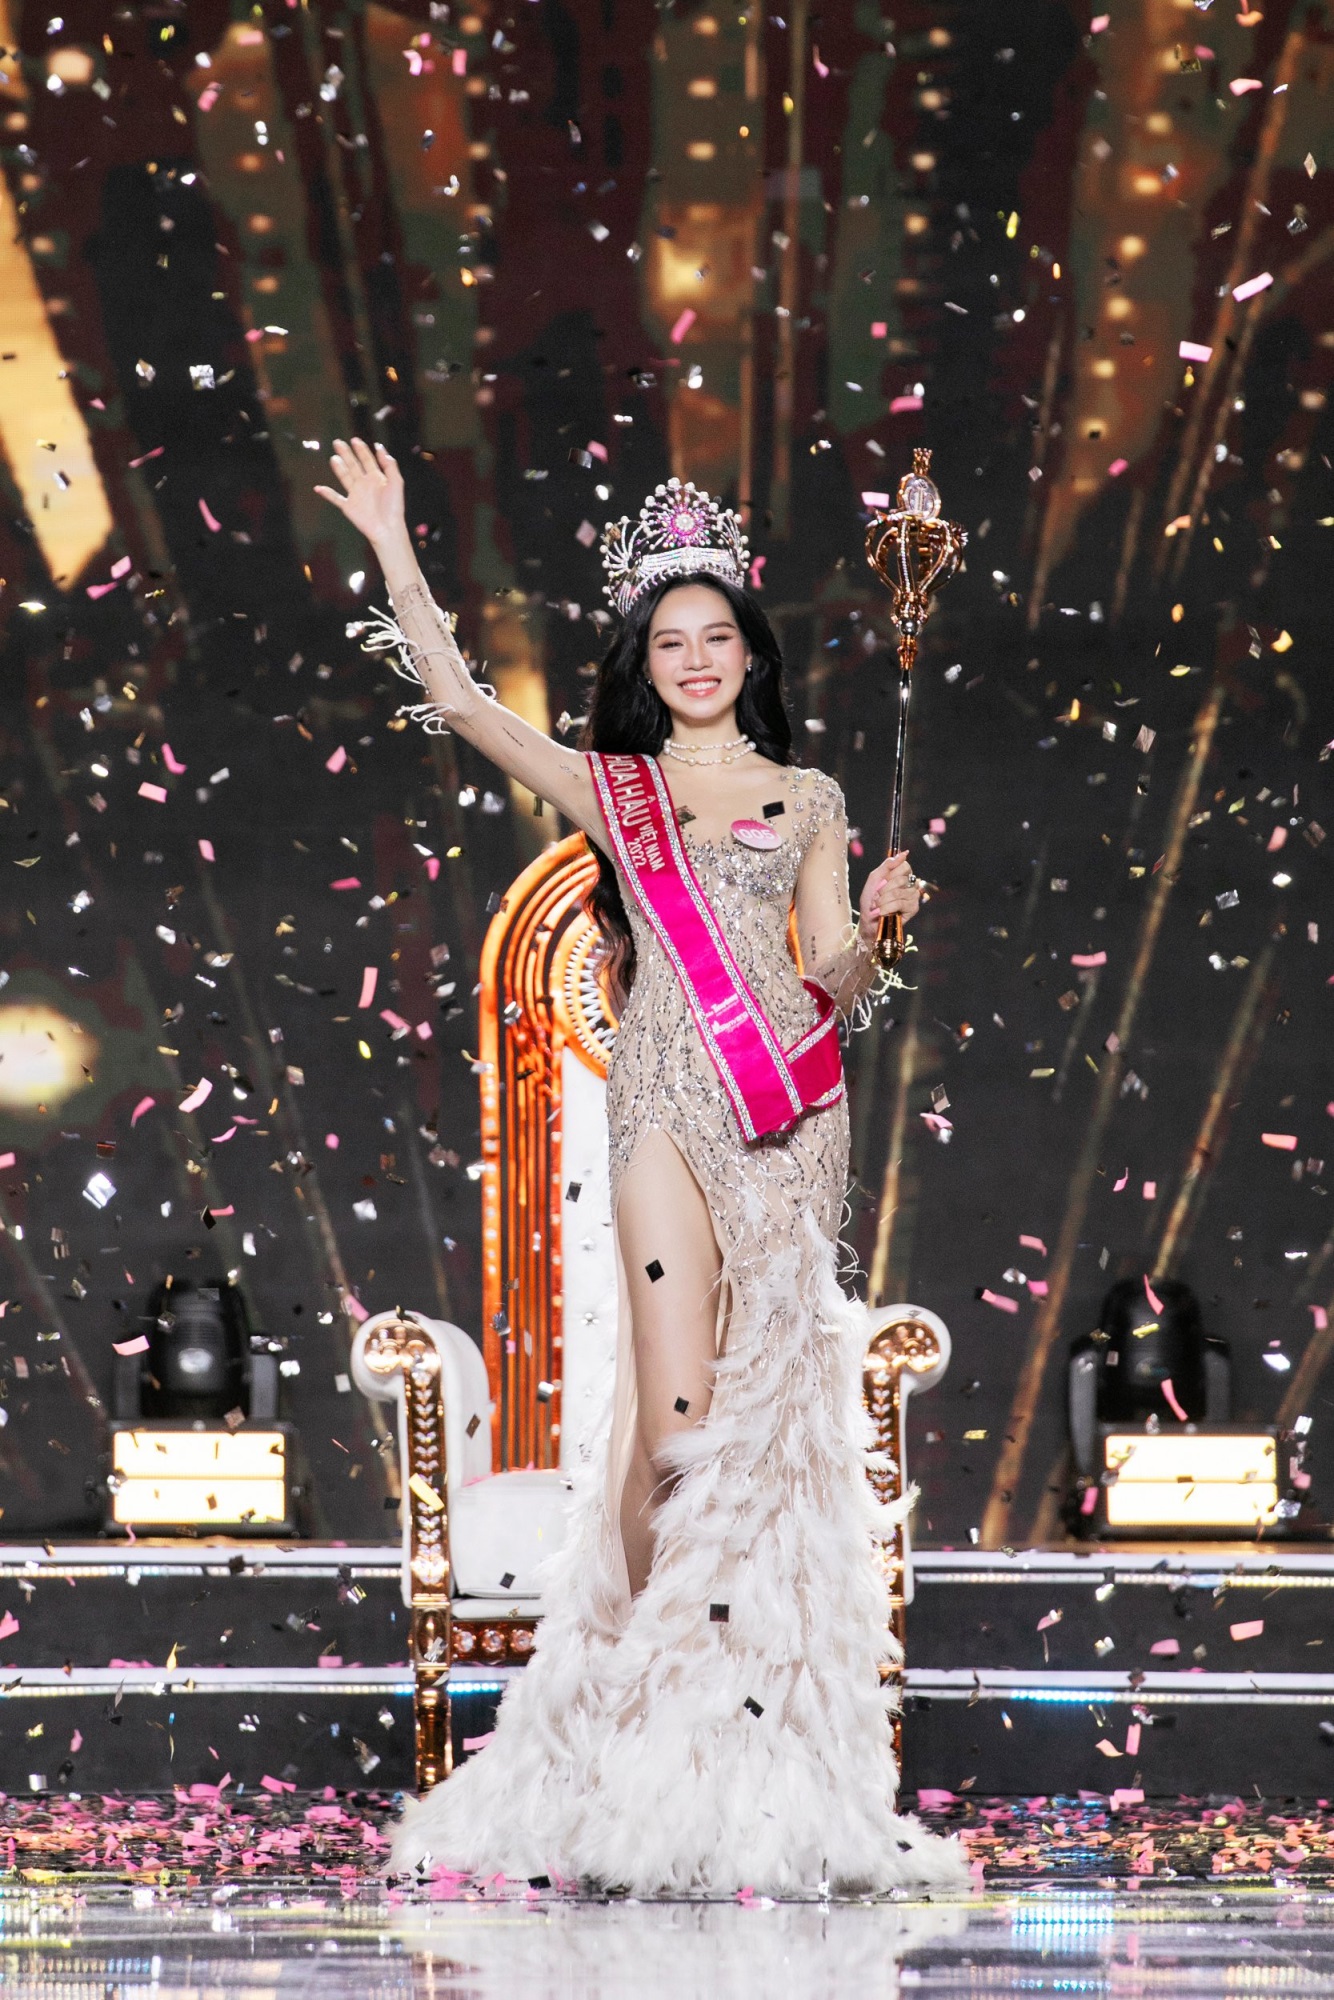 Hoa hậu Thanh Thủy bị nghi gian lận để thắng vì quá nhạt nhòa, BTC lên tiếng - Ảnh 4